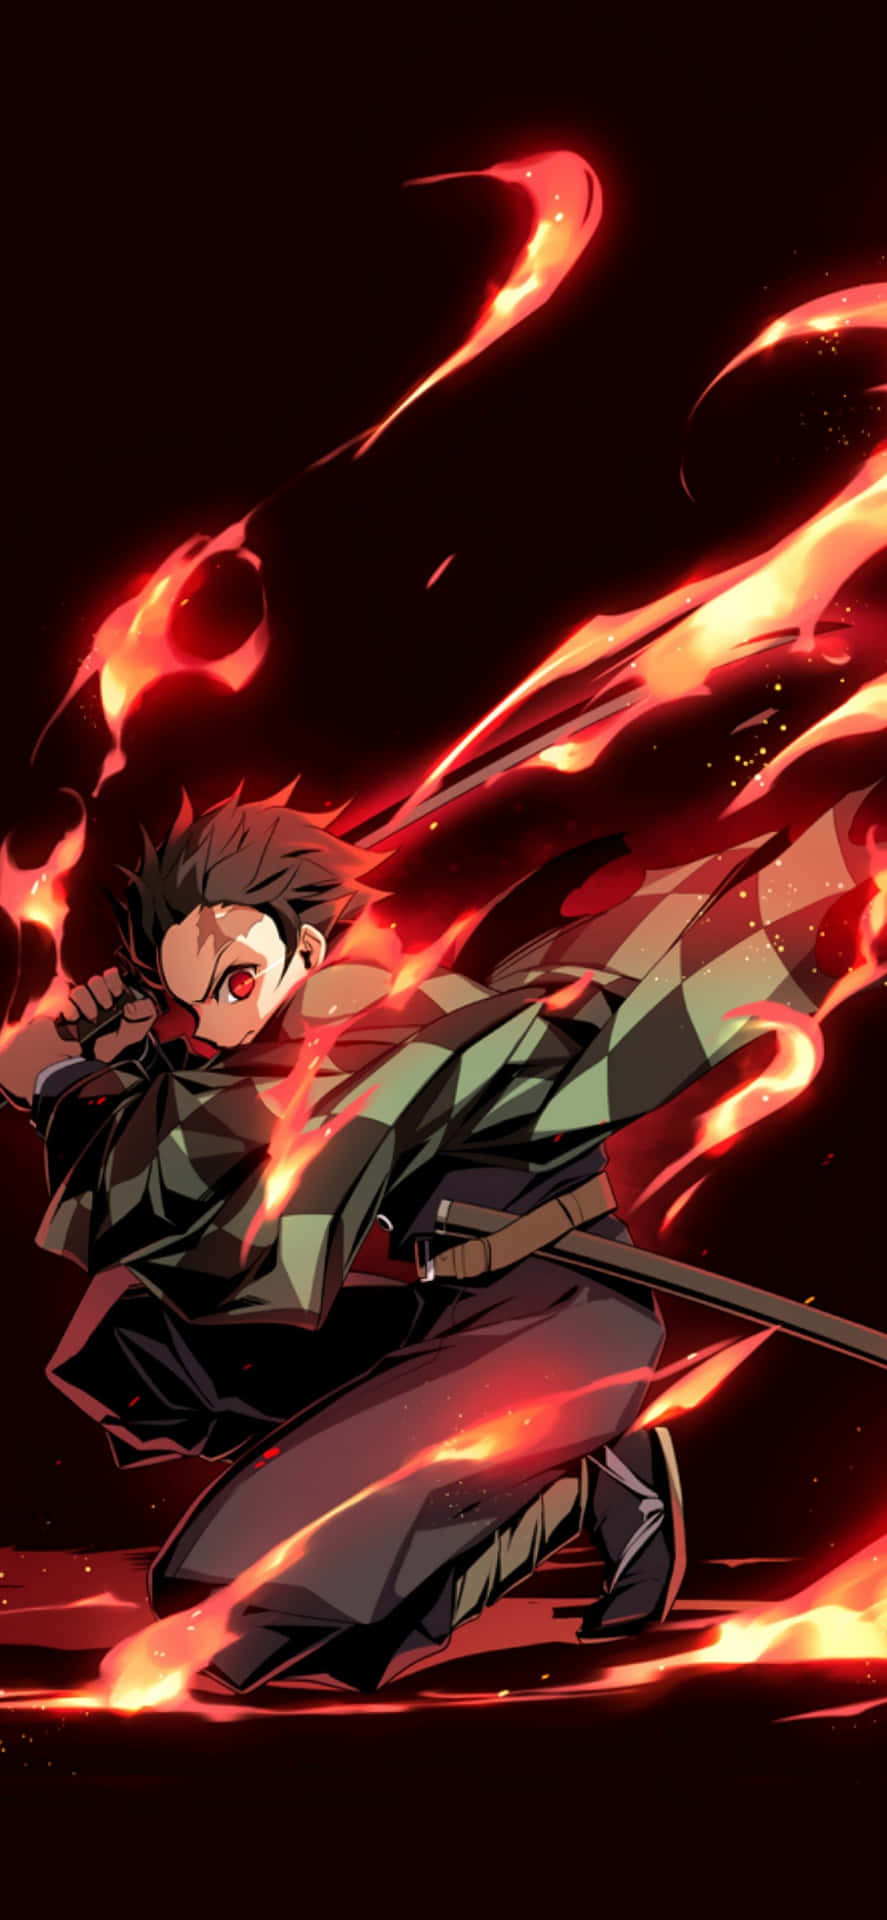 Fire Breathing From Anime Demon Slayer Wallpaper